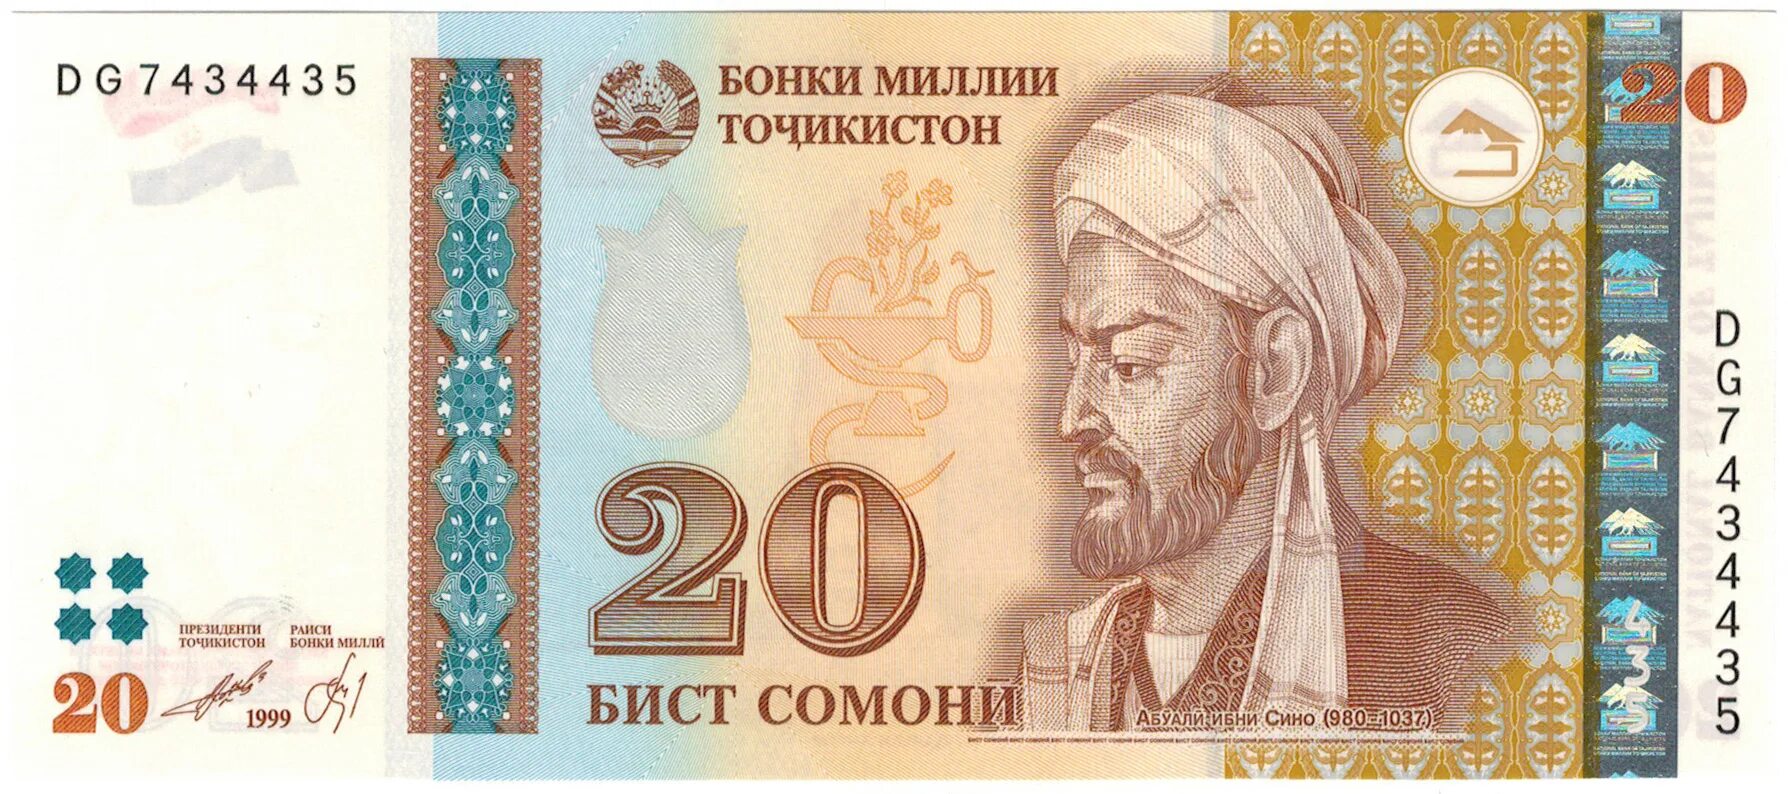 Таджикистан банкнота 20 Сомони 1999. Таджикские деньги 20 Сомони. 20 Таджикских Сомони, 1999. Таджикский купюры 500 Сомони. 1 точикистон